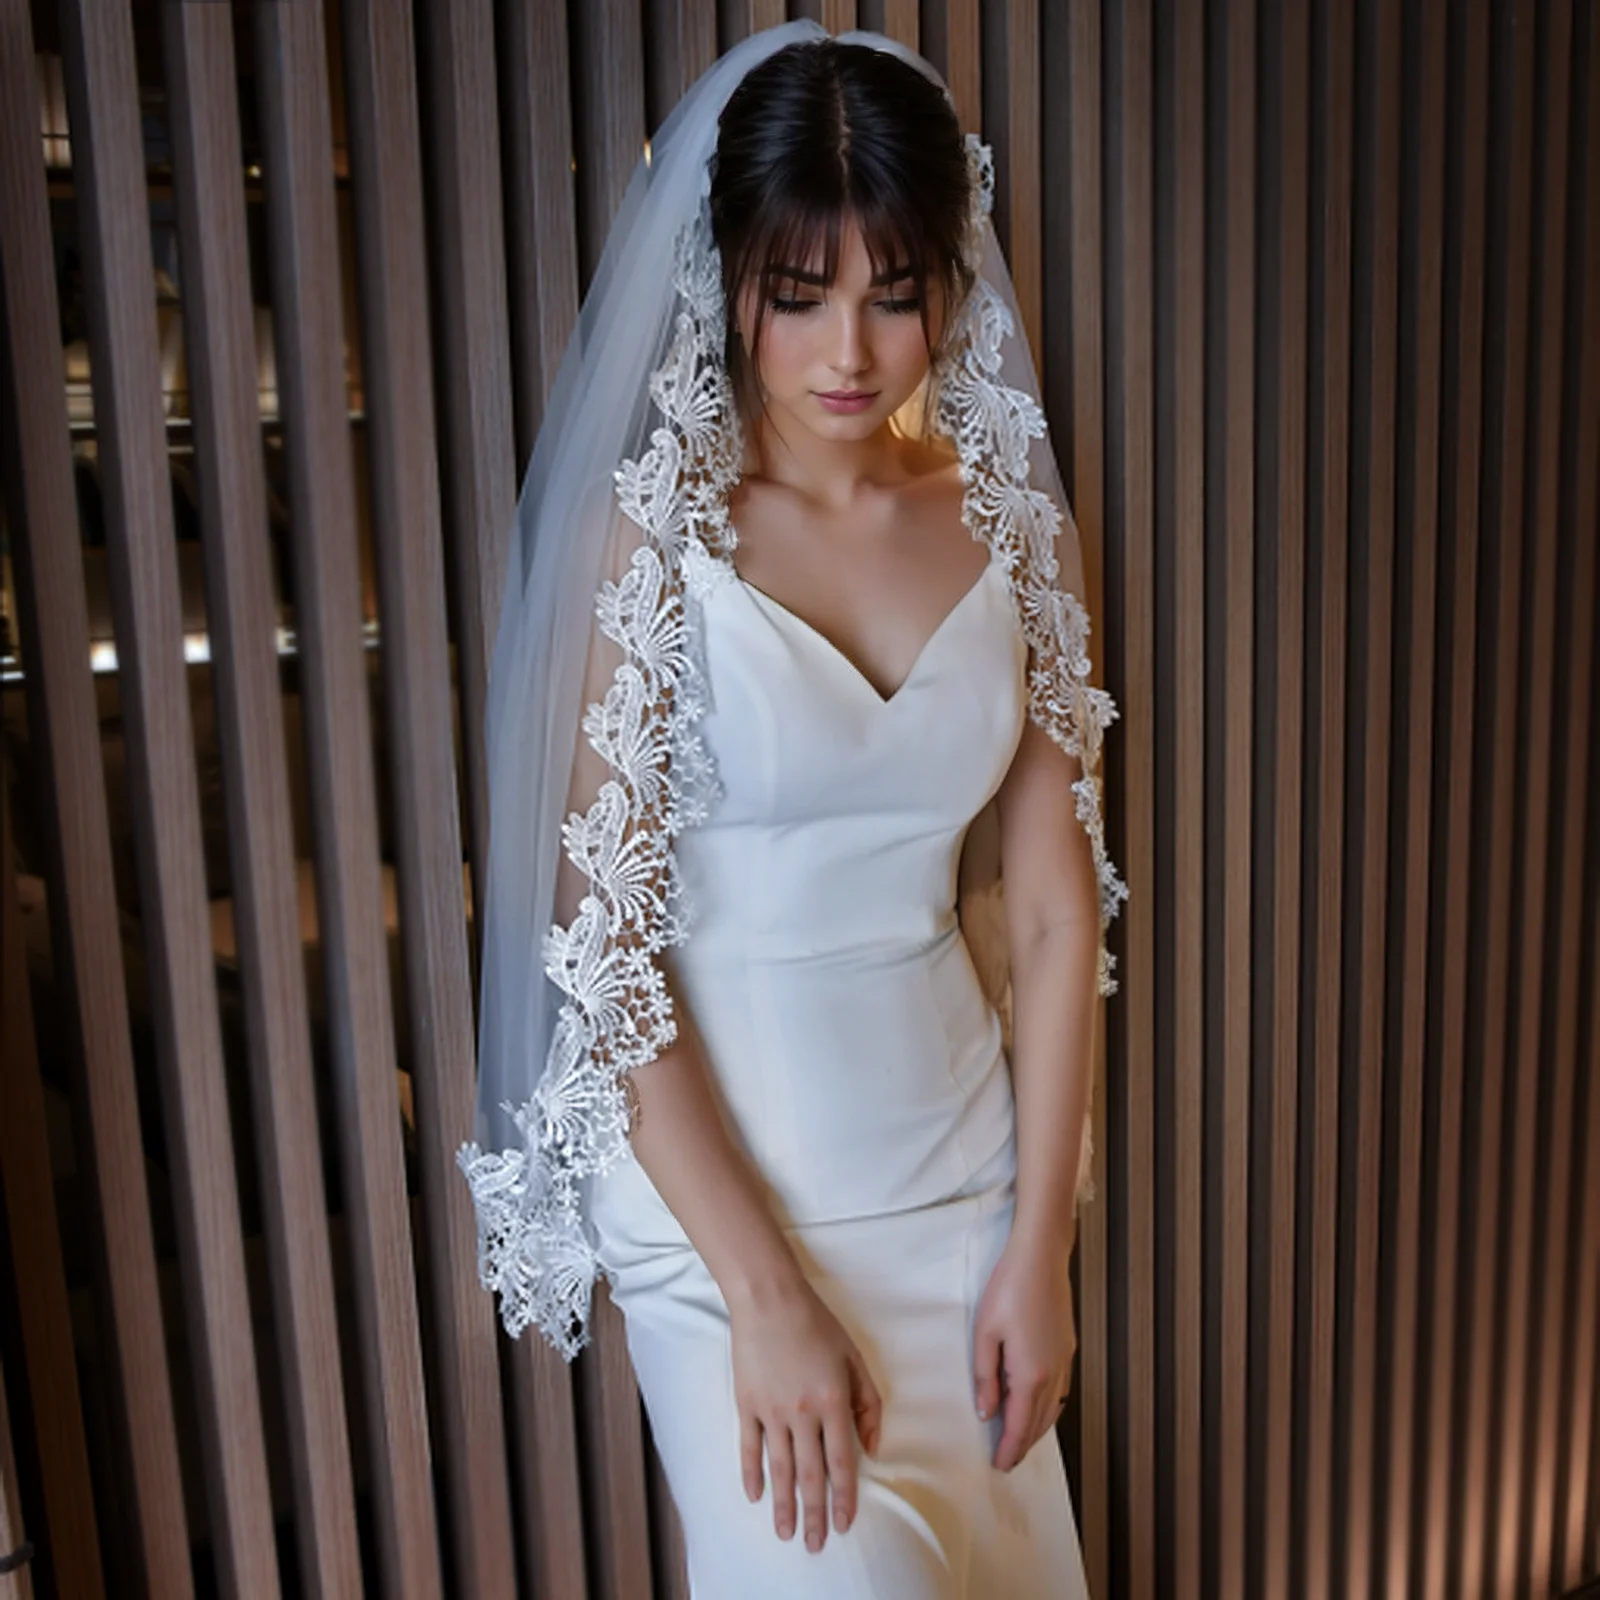 

M31 Short Bridal Veils Wedding Lace Applique Edge Wedding Veil Partial Trim 1 Tier Fingertip Bride Veil Bridal Accessories